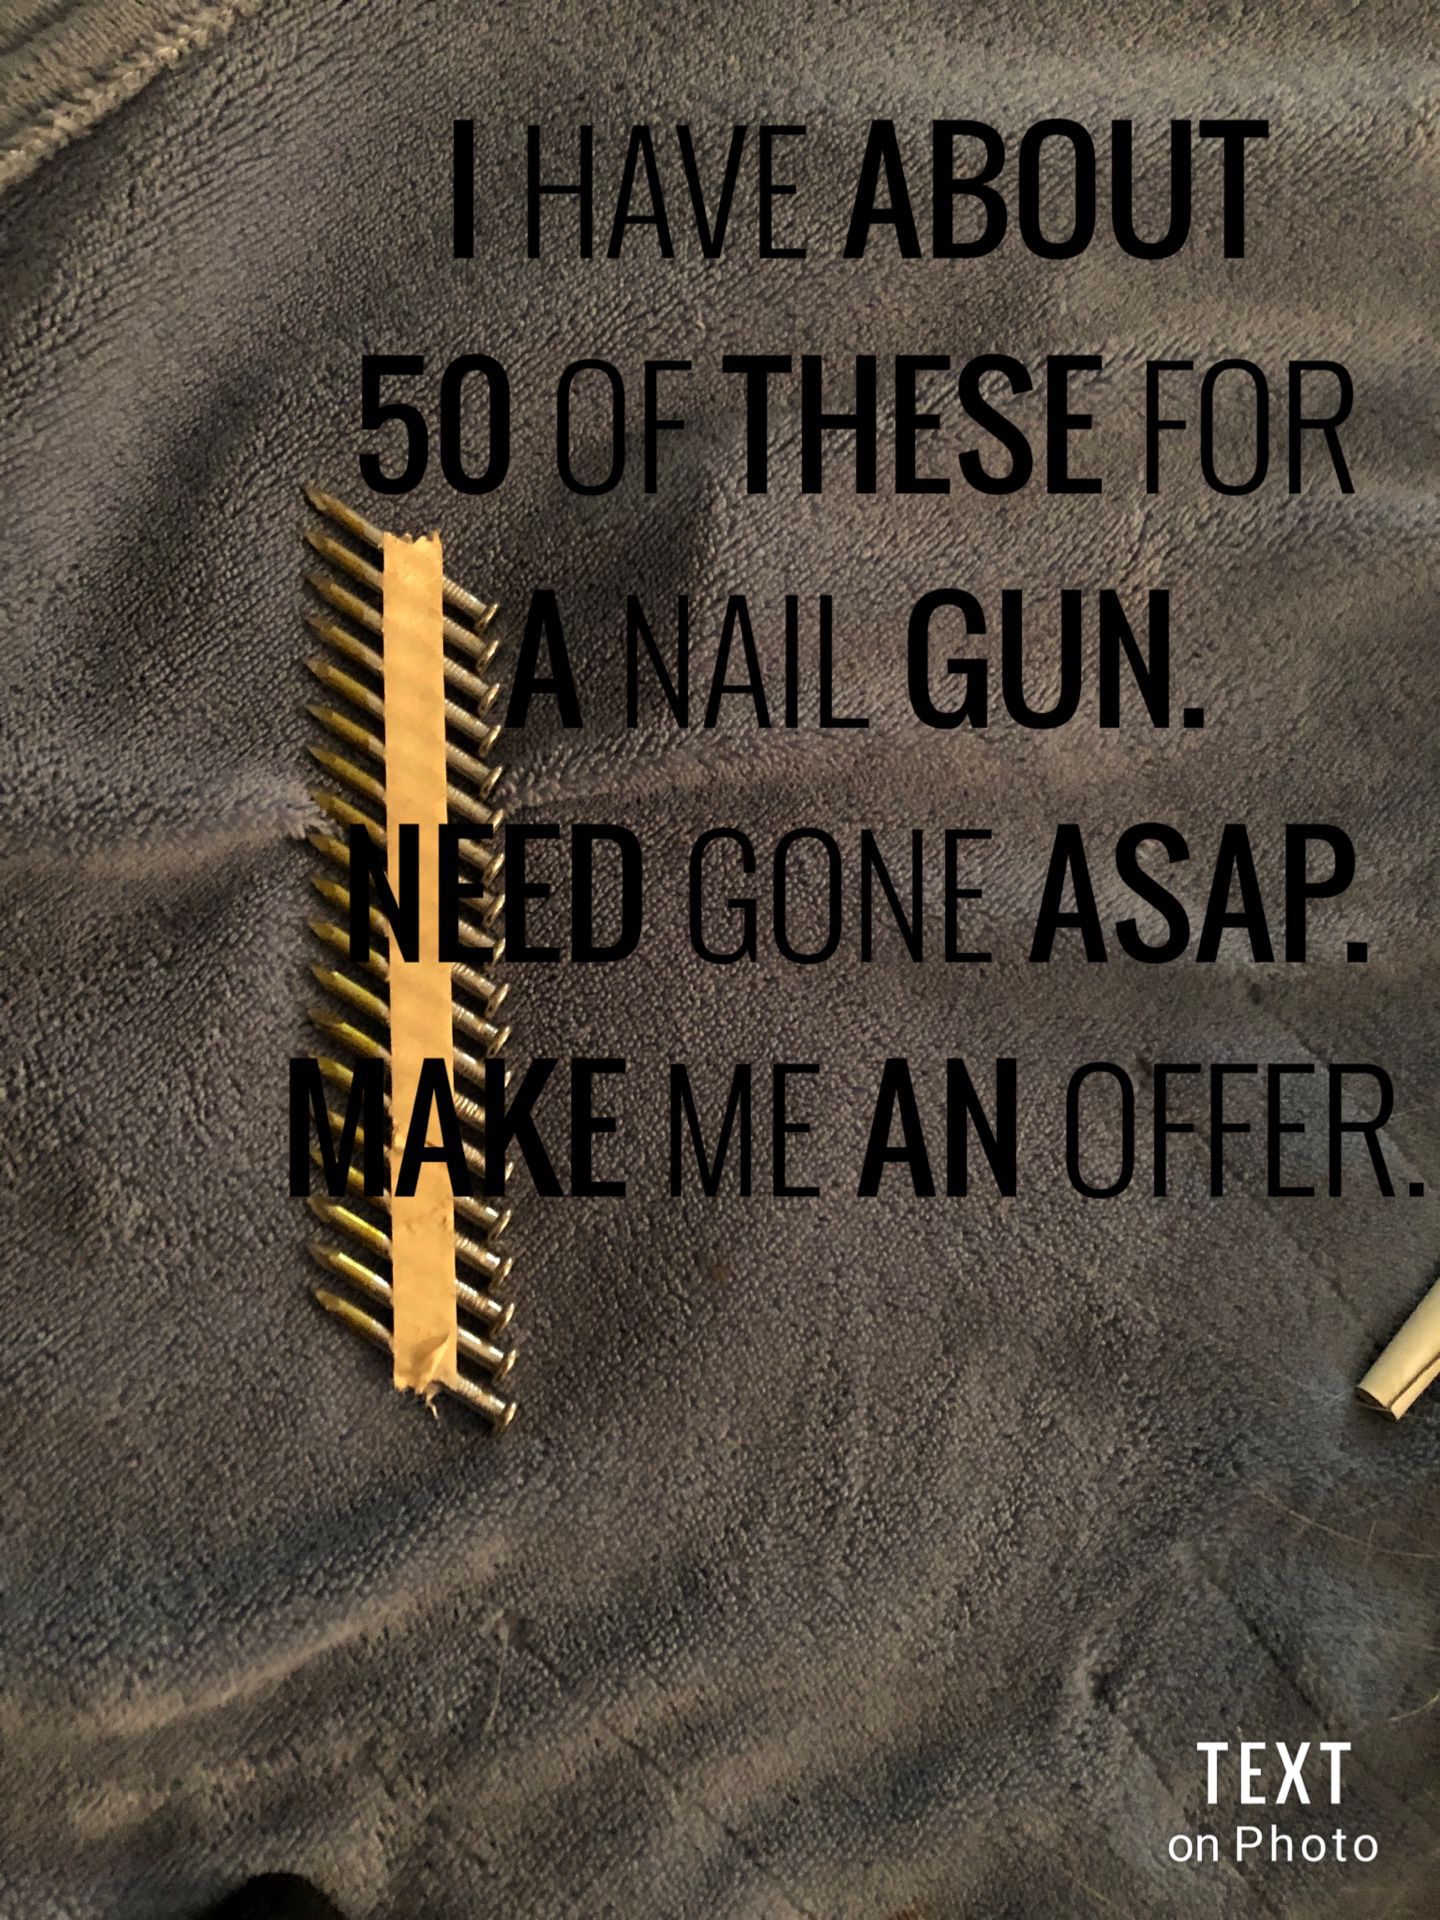 Nails for nail gun